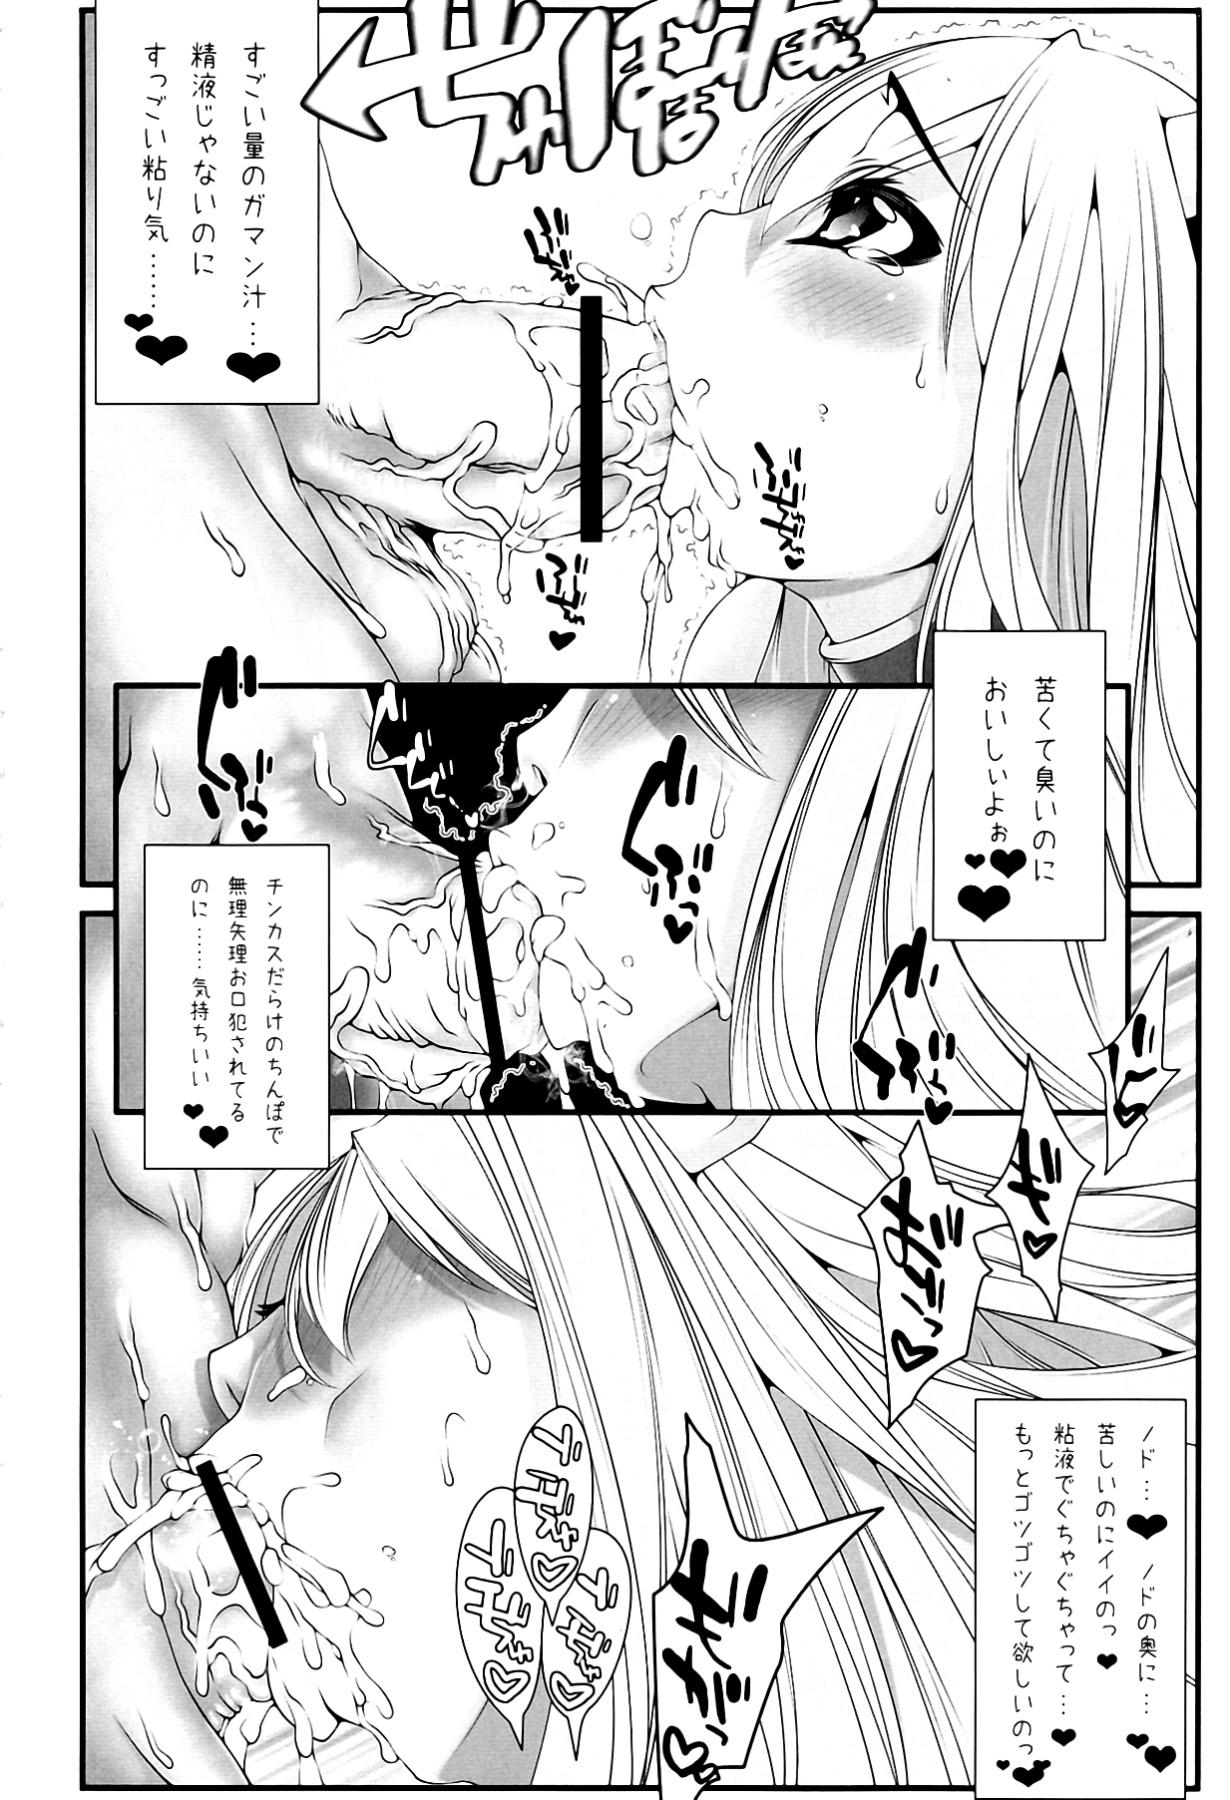 Brazzers Astraea-san to. - Sora no otoshimono Gay Straight - Page 6